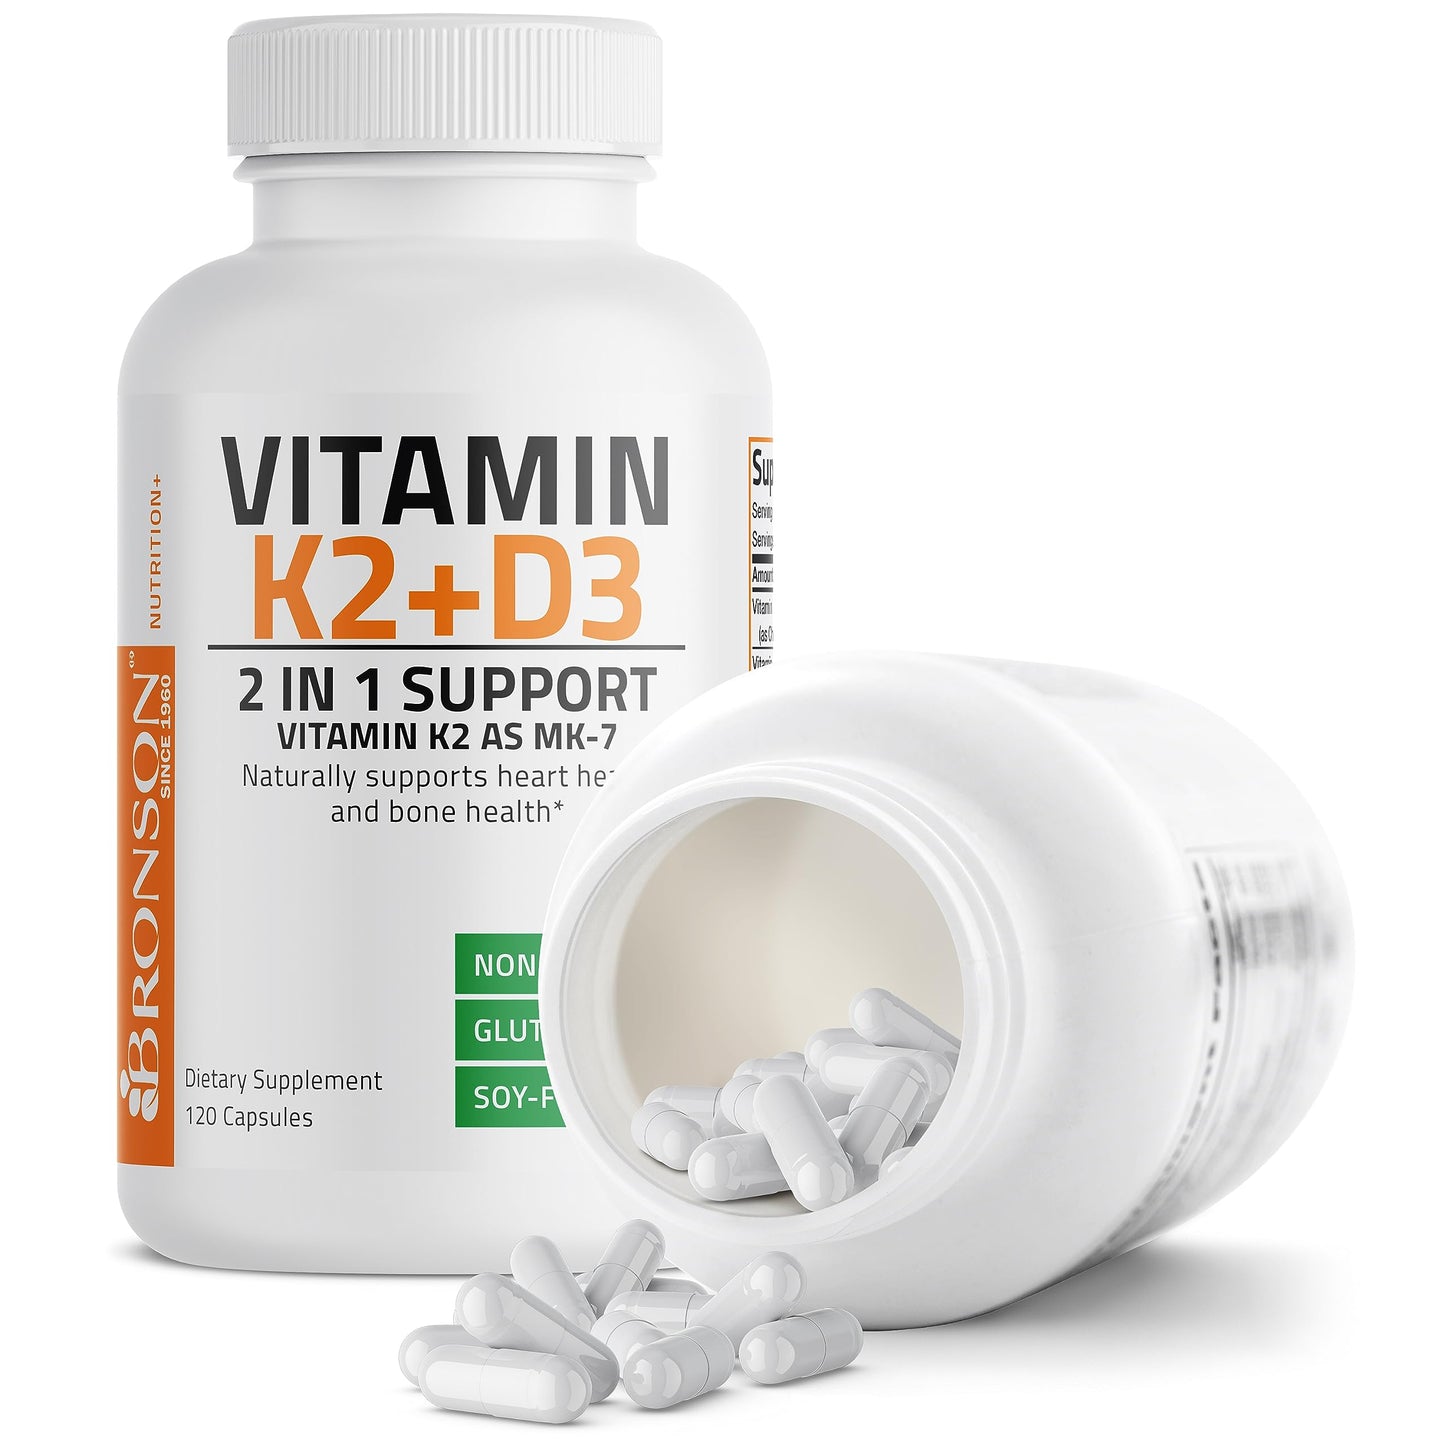 Bronson Vitamin K2 (MK7) with D3 Supplement Non-GMO Formula 5000 IU Vitamin D3 & 90 mcg Vitamin K2 MK-7 Easy to Swallow Vitamin D & K Complex, 120 Capsules